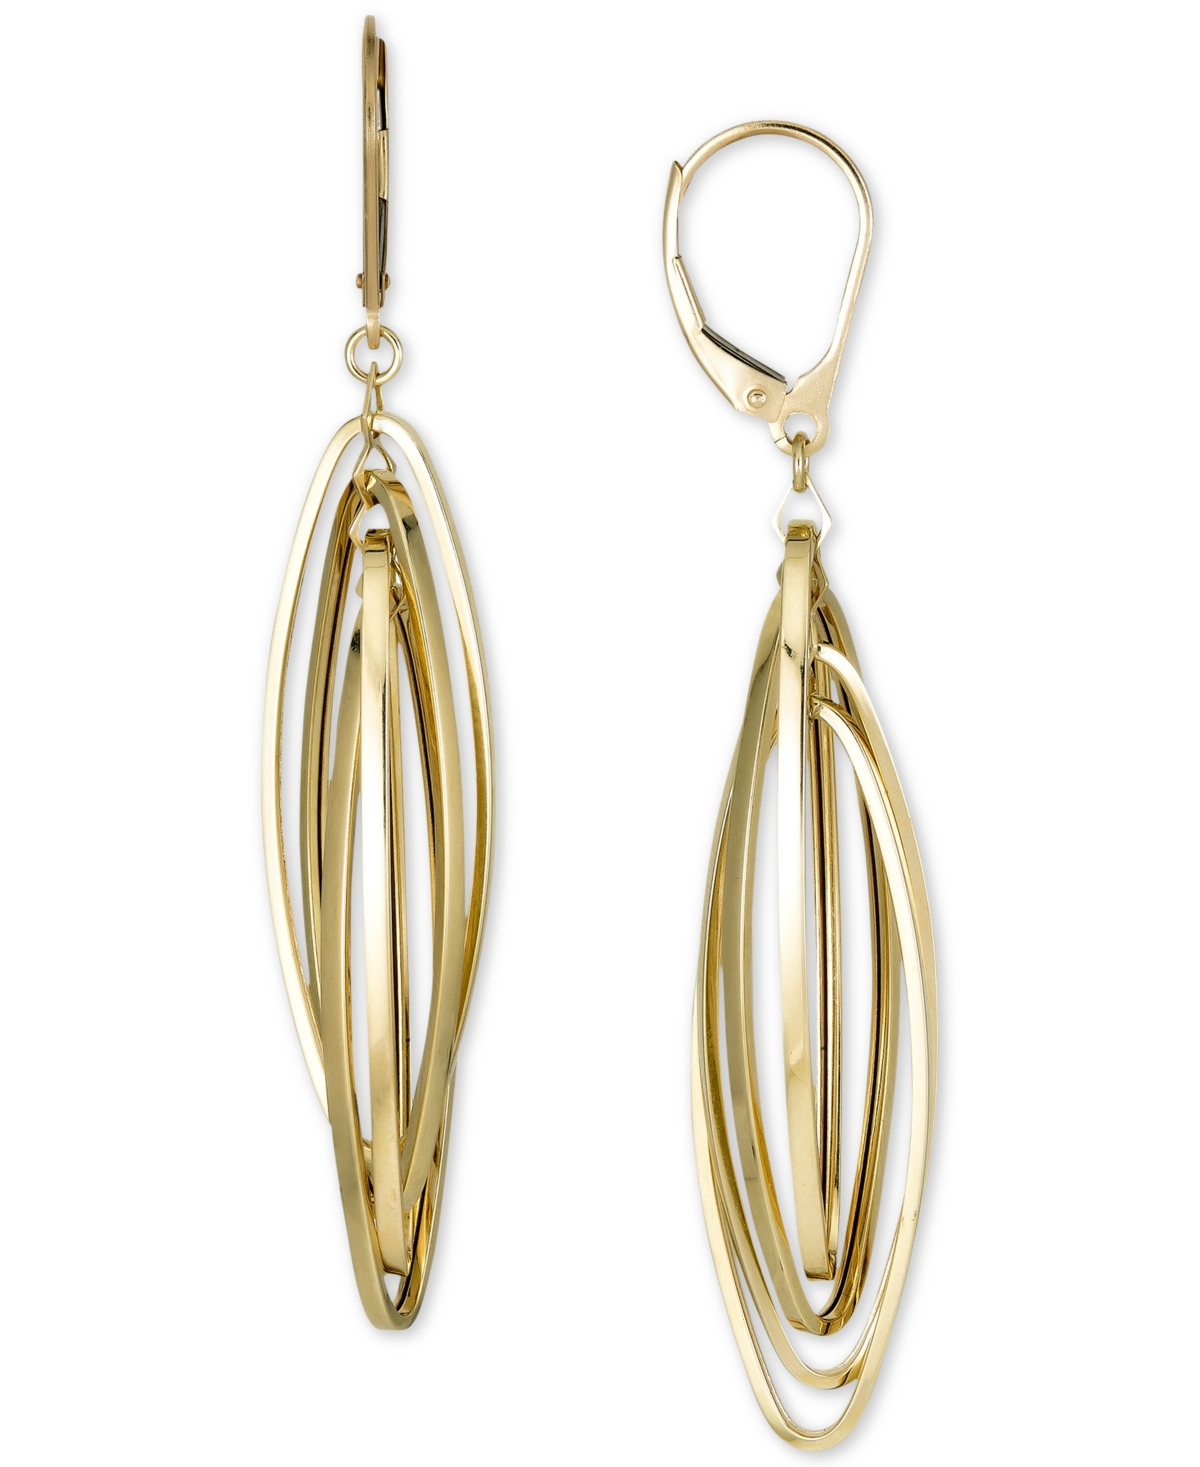 Orbital Open Navette Drop Earrings in 10k Gold - Yellow Gold